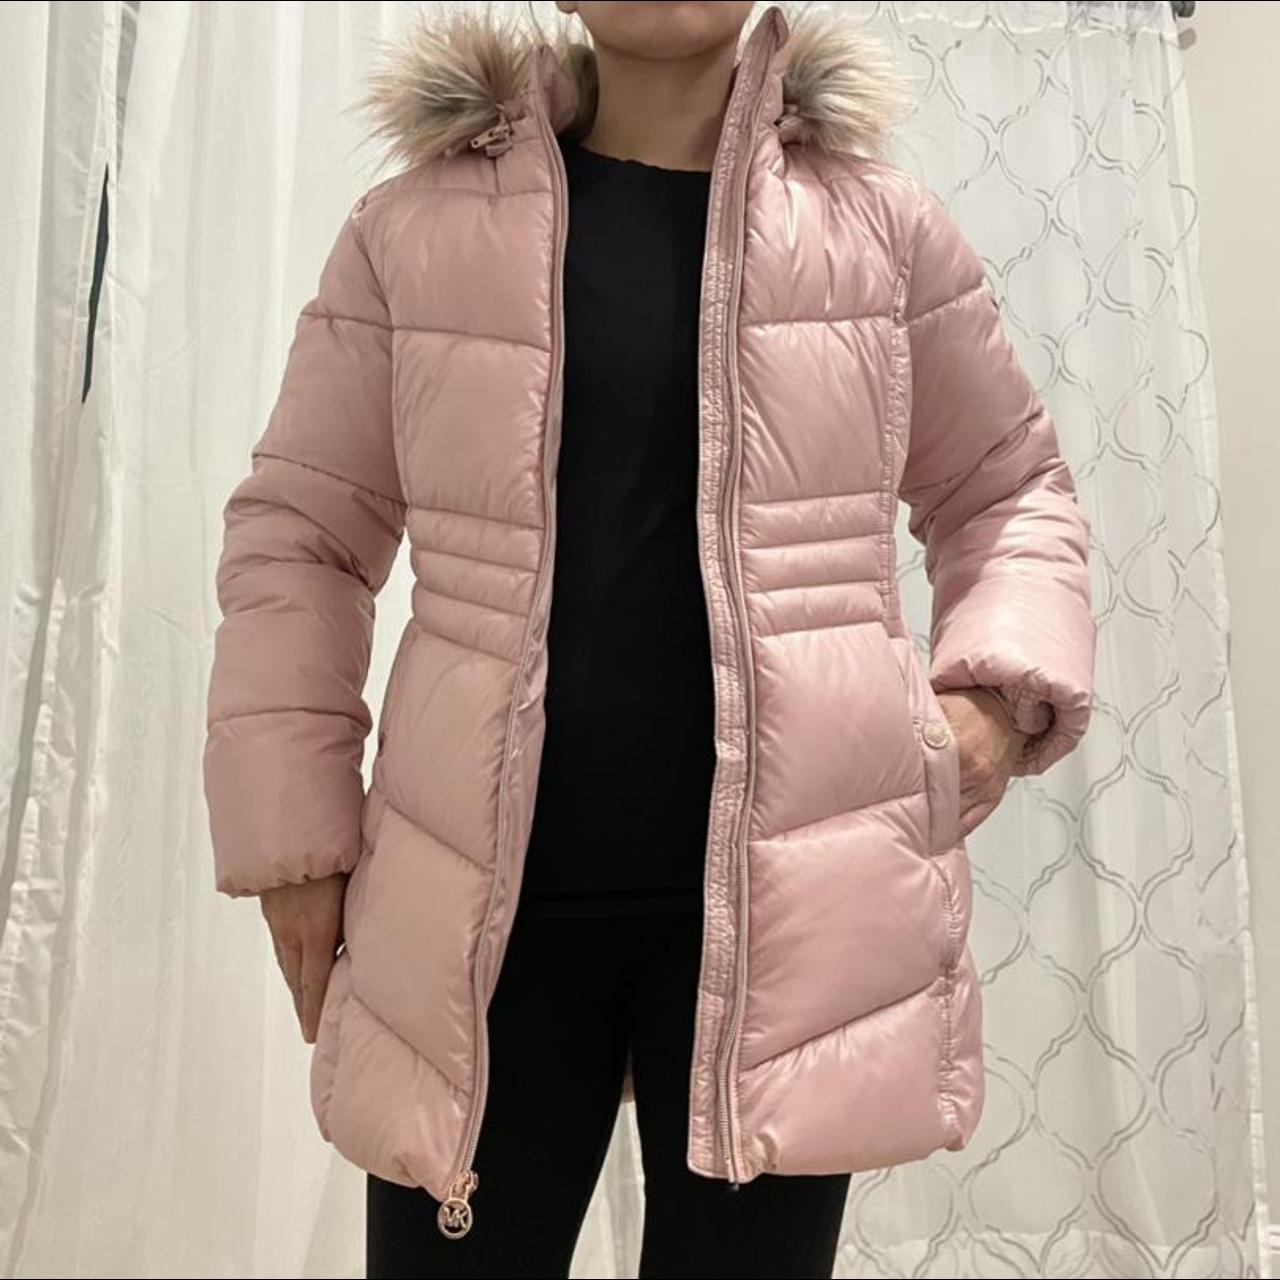 Michael Kors Women's Pink Coat